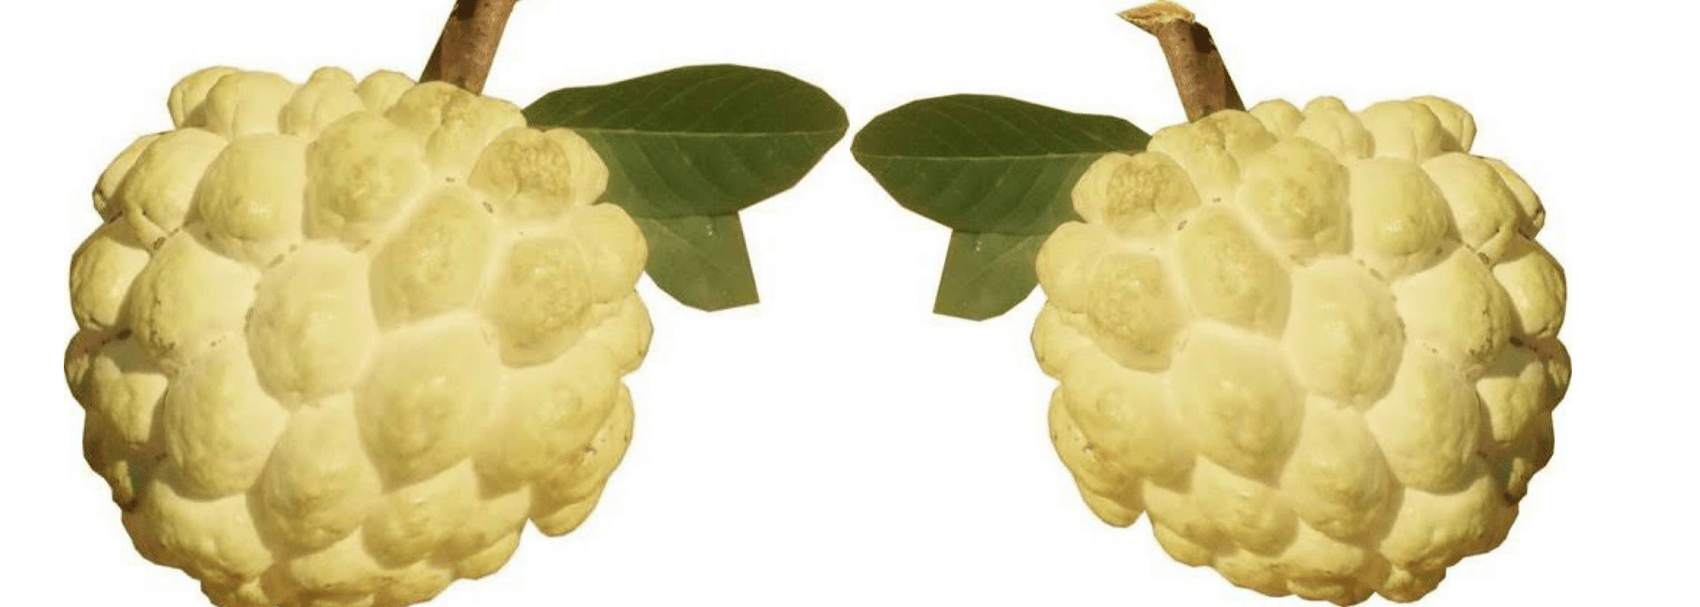 गोल्डन सीताफल(NMK1 Golden Sitafal) की उन्नत खेती | मुनाफे की फसल 